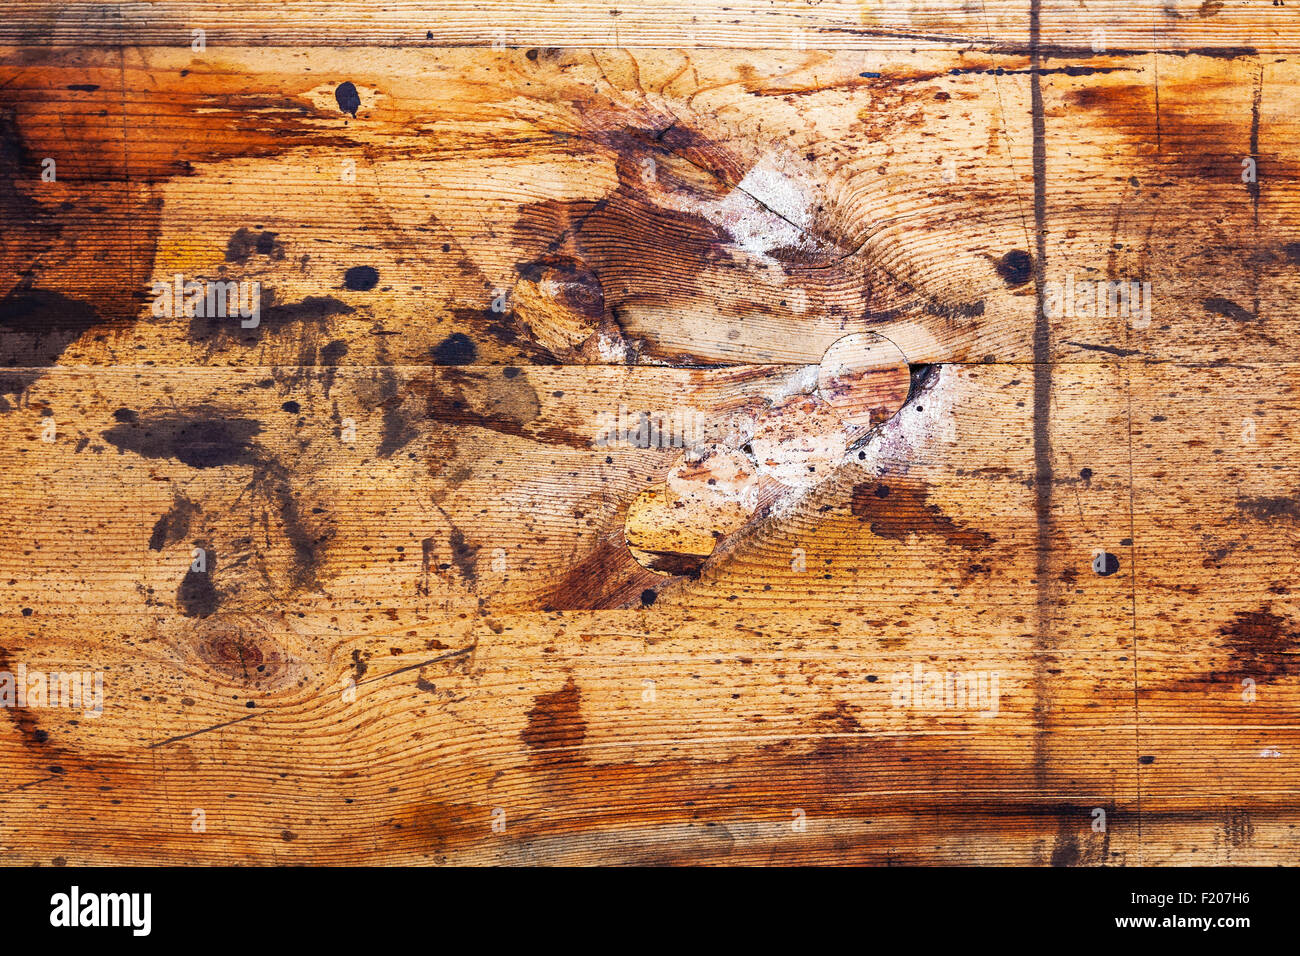 Hintergrundtextur von rustikalen hölzernen Planken mit Grunge-Farbe Stockfoto